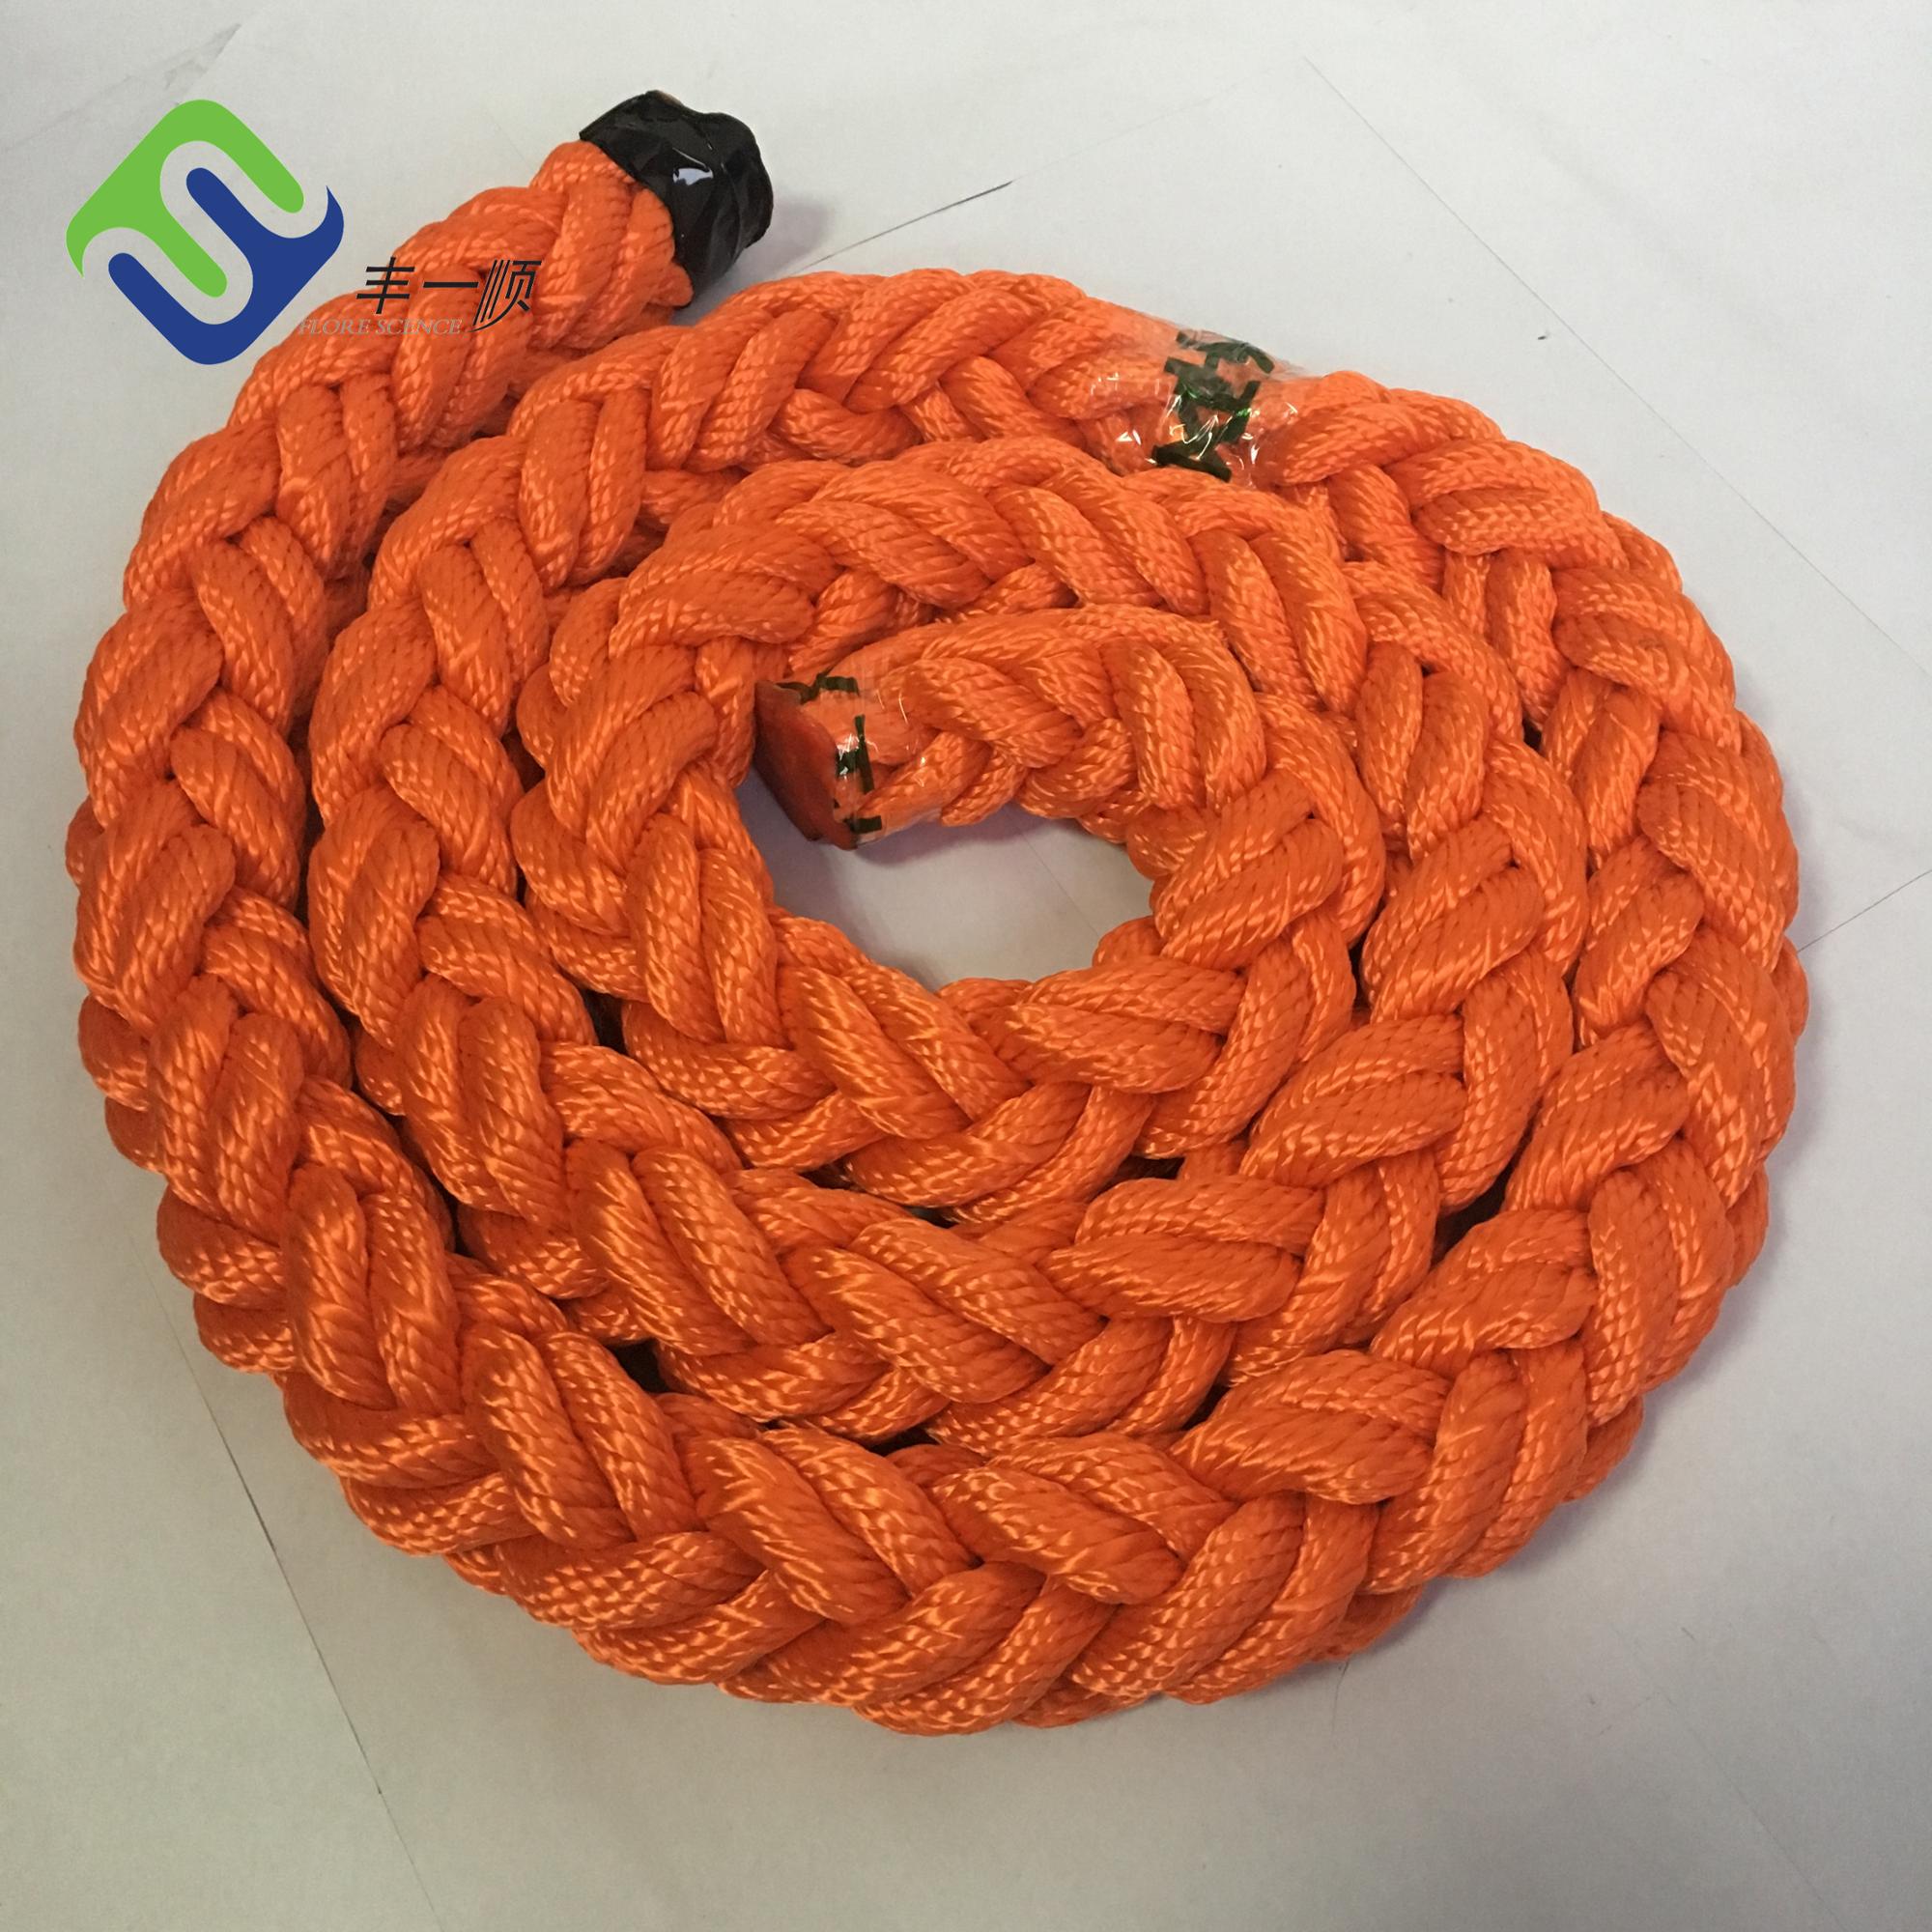 Wholesale Price Uhmwpe Polyethylene Fishing Rope - High Strength Polyester 8 Strand Marine Boat Used Rope – Florescence